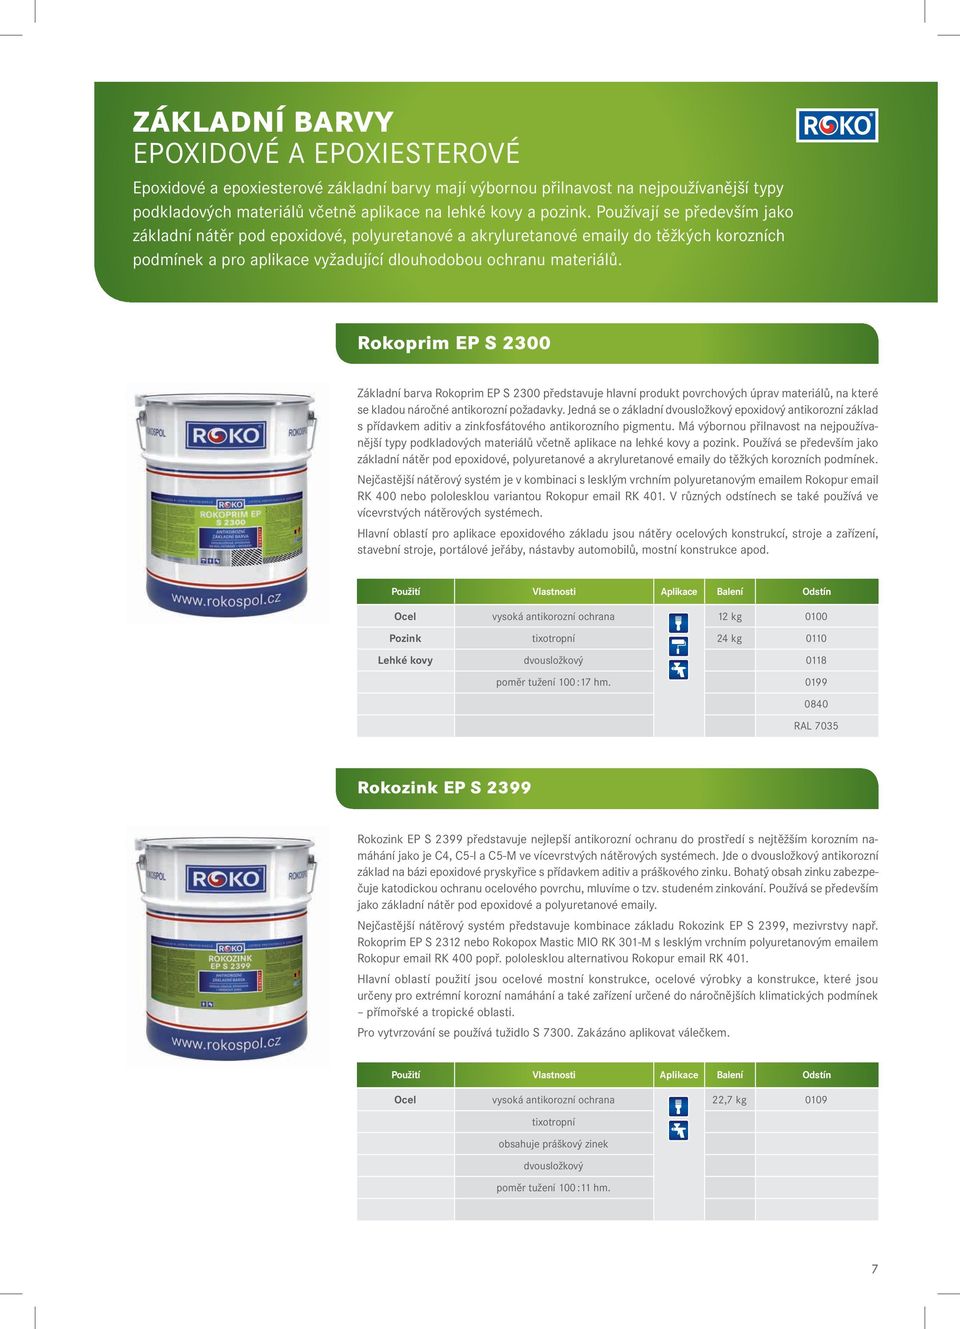 Rokoprim EP S 2300 Základní barva Rokoprim EP S 2300 představuje hlavní produkt povrchových úprav materiálů, na které se kladou náročné antikorozní požadavky.